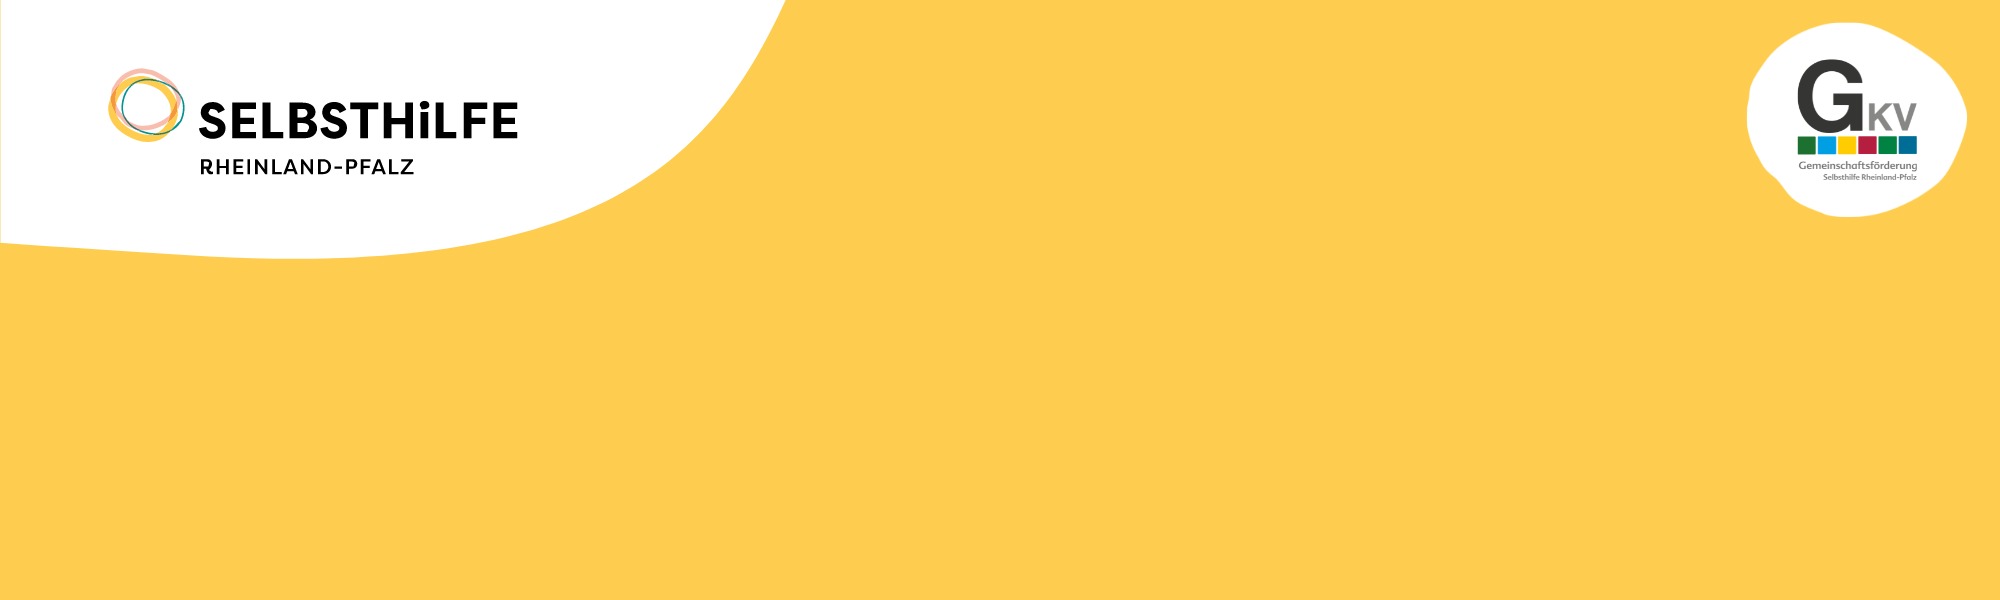 Schriftzug Selbsthilfe Rheinland-Pfalz auf gelbem Hintergrund und Logo des Förderers der Initiative, der GKV.